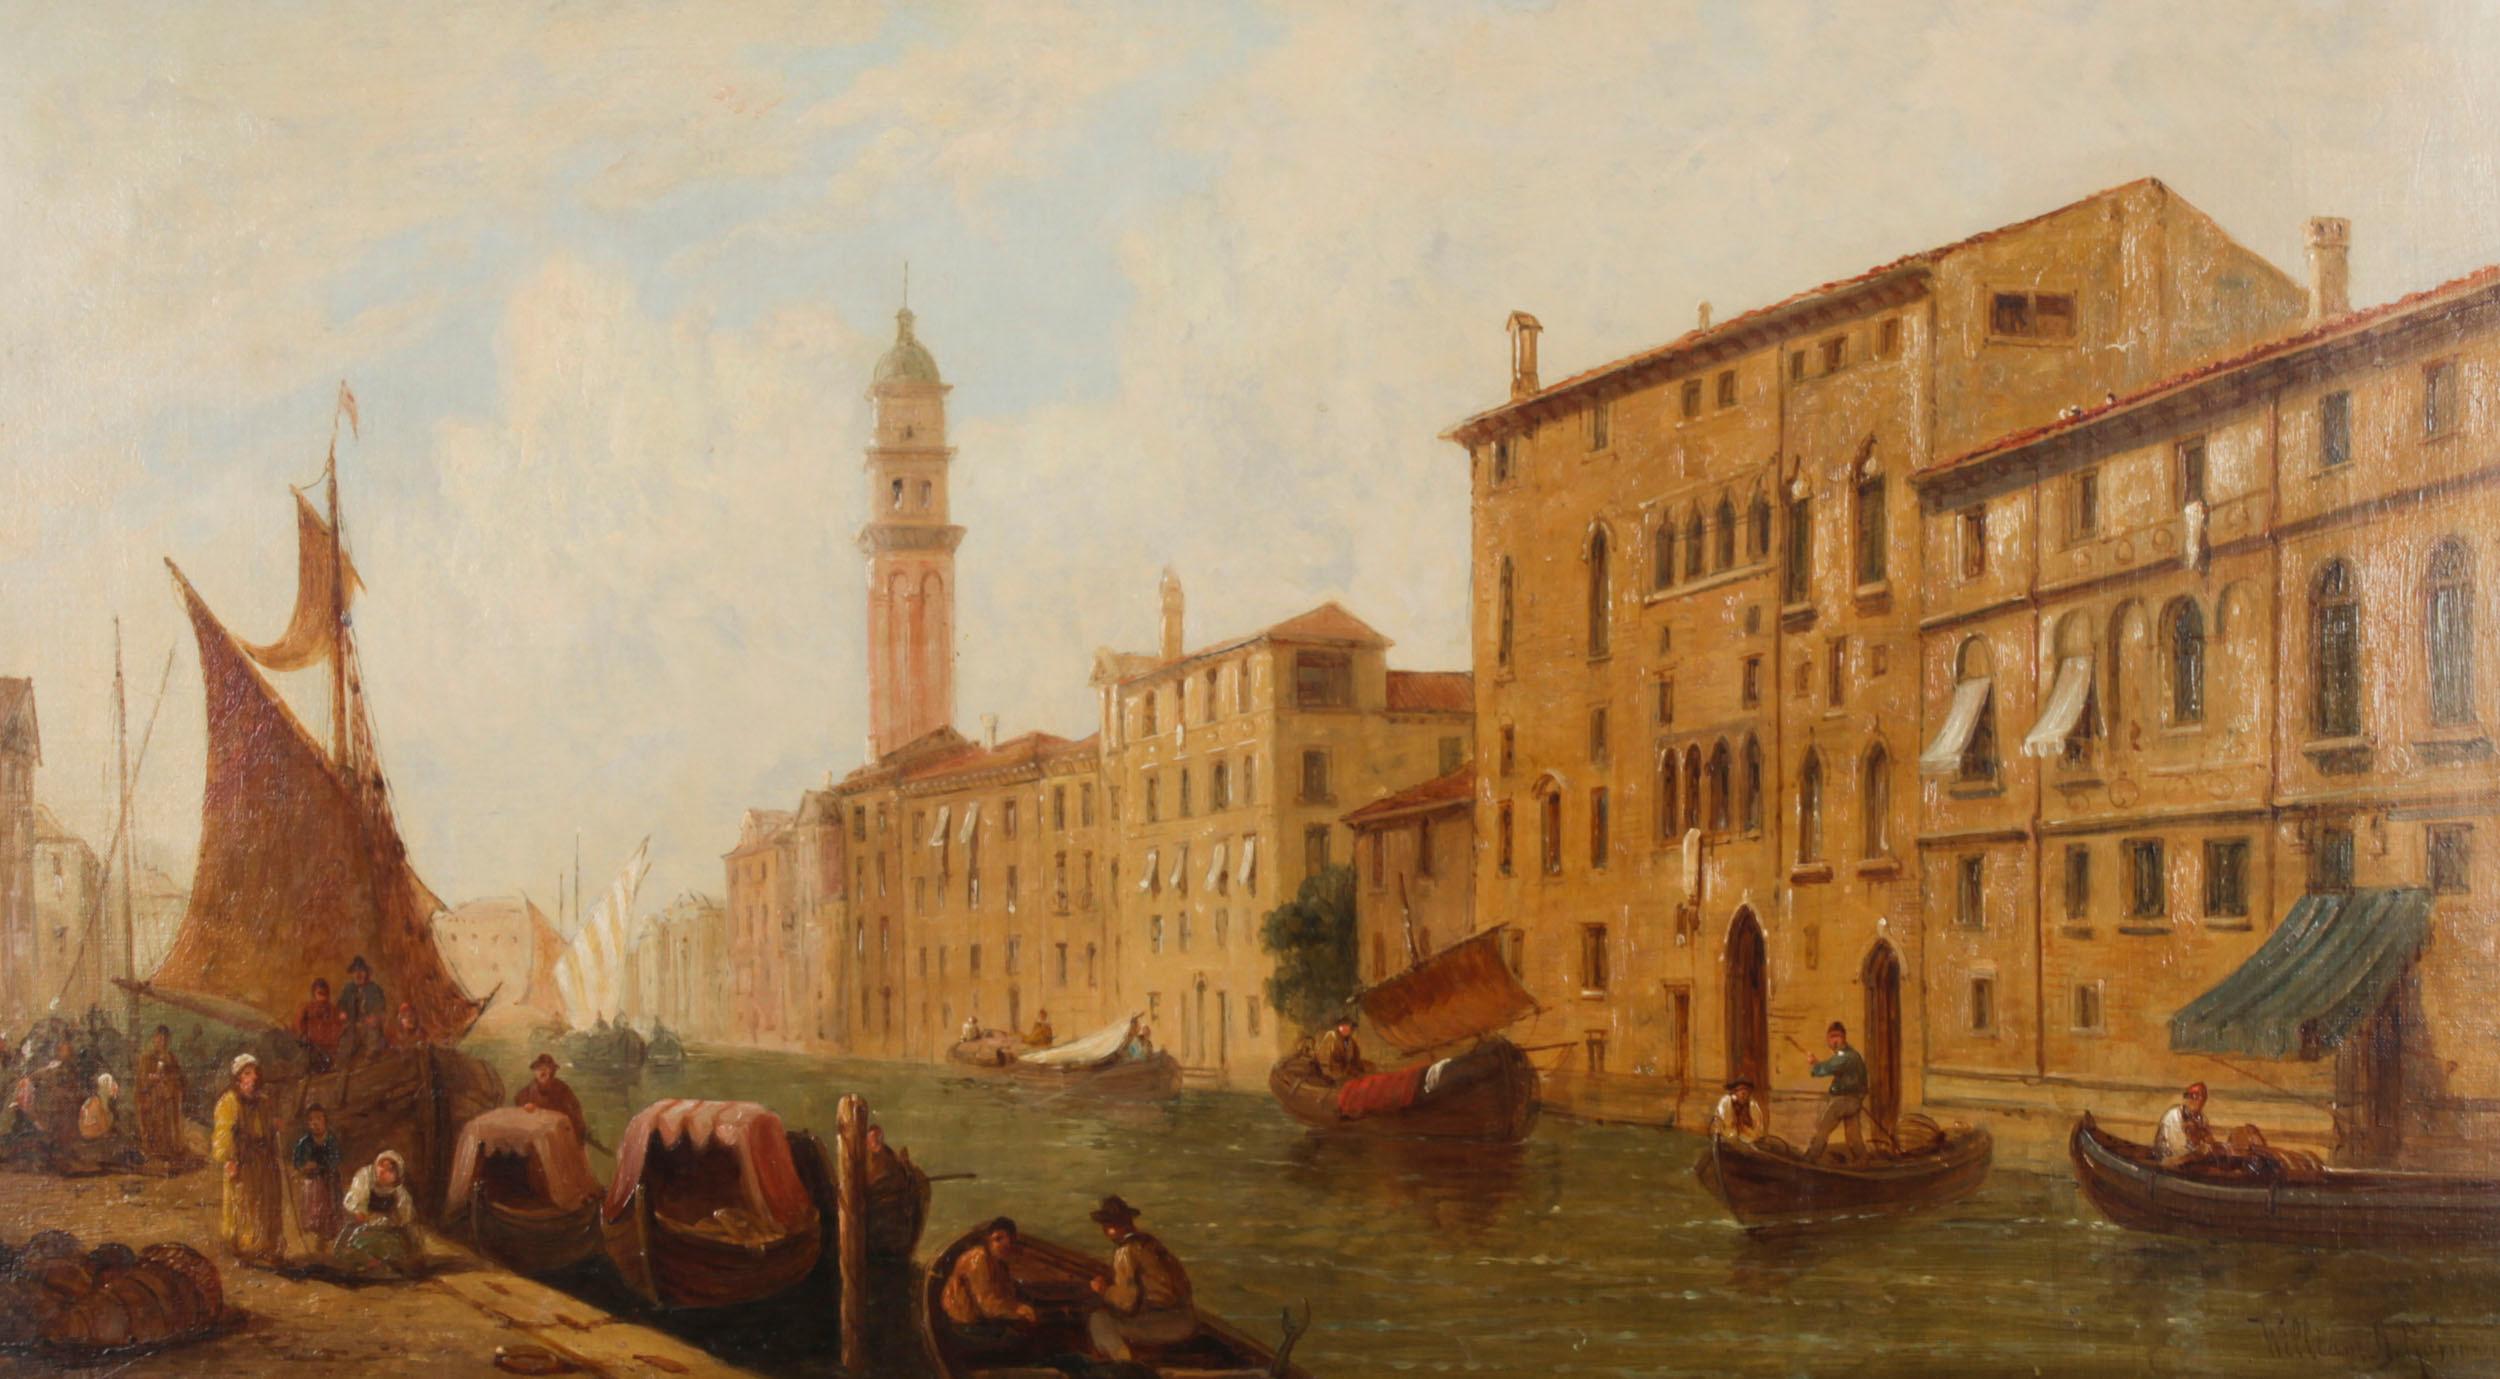 Dies ist ein schönes Öl auf Leinwand Gemälde der Blick auf den Herzogspalast und den Eingang zum Markusplatz Kanal in Venedig von der berühmten William Raymond Dommersen (1850 - 1927), signiert unten rechts.

William Raymond Dommersen entstammte